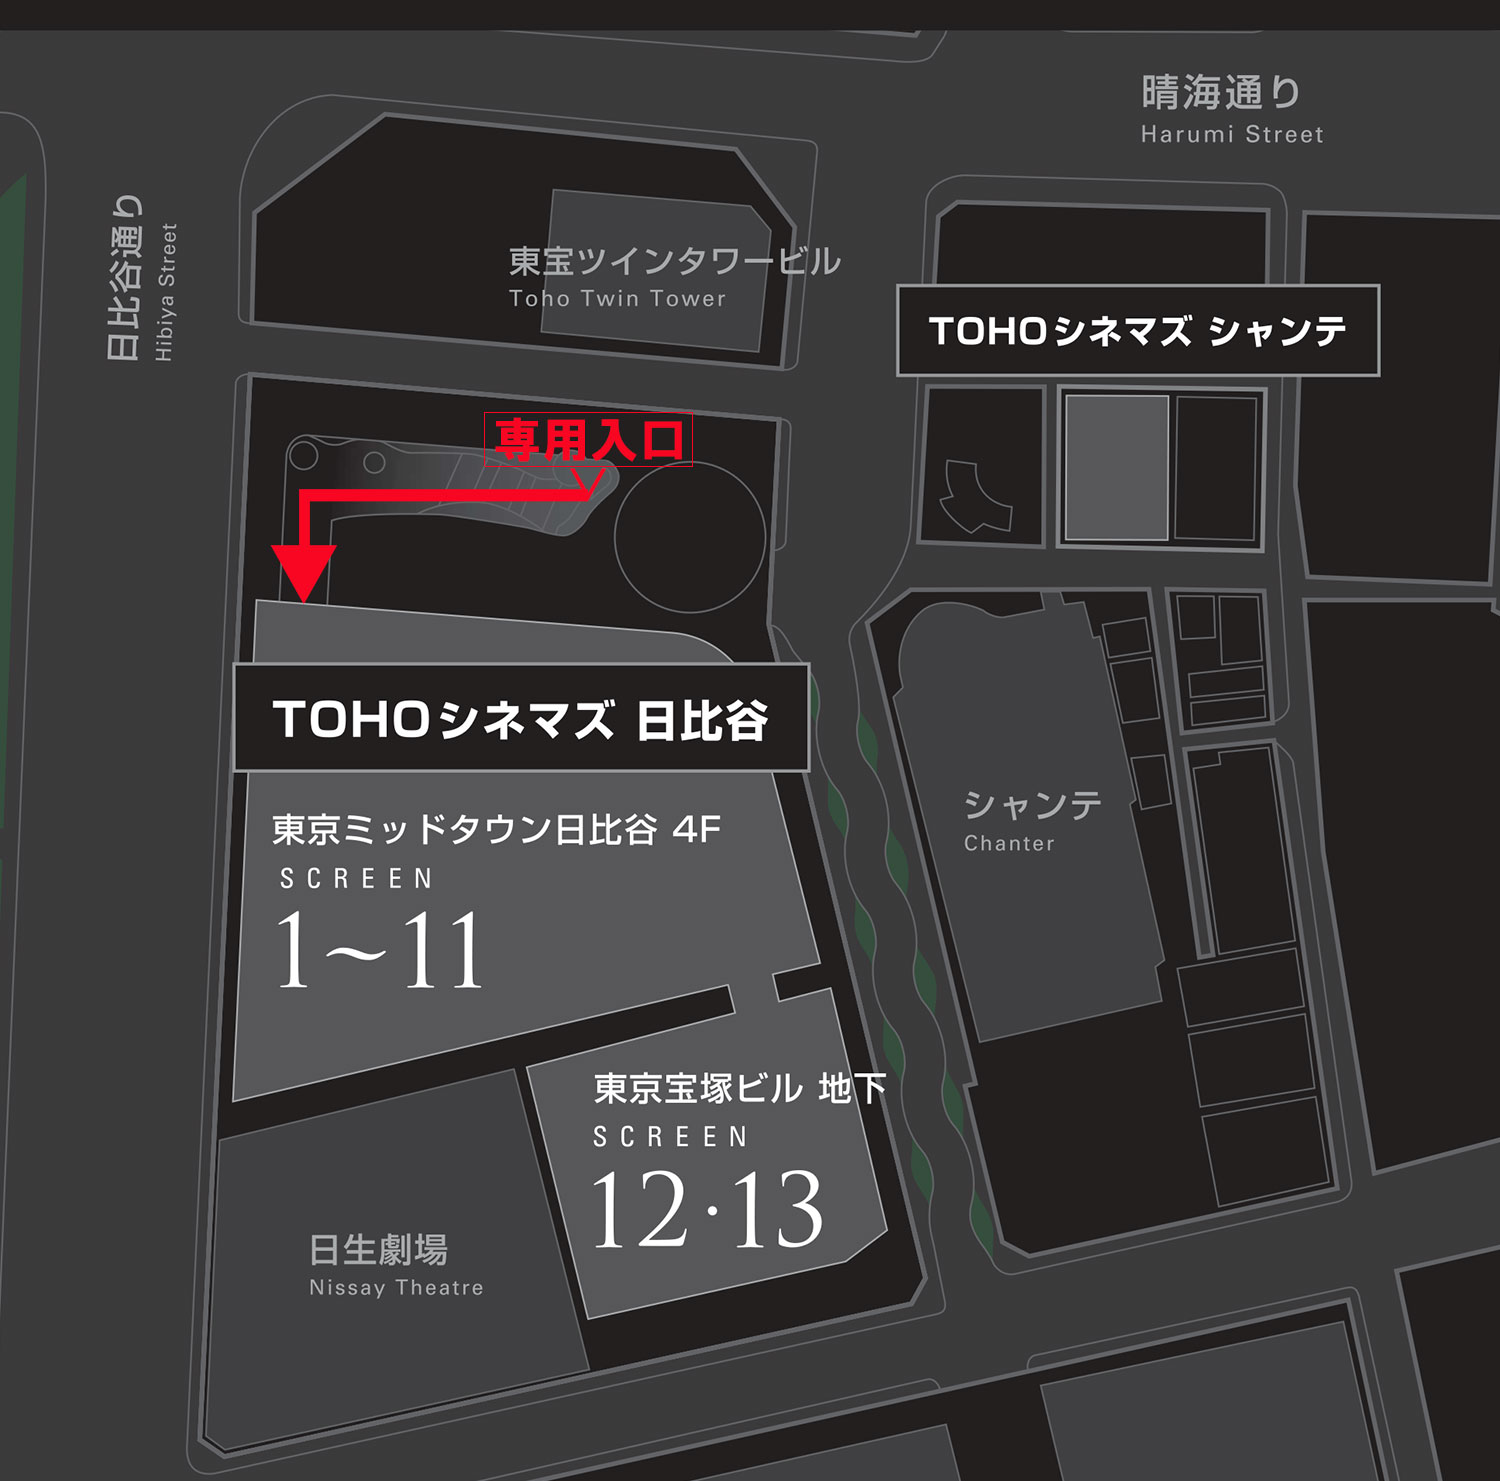 hibiya_map0330.jpg